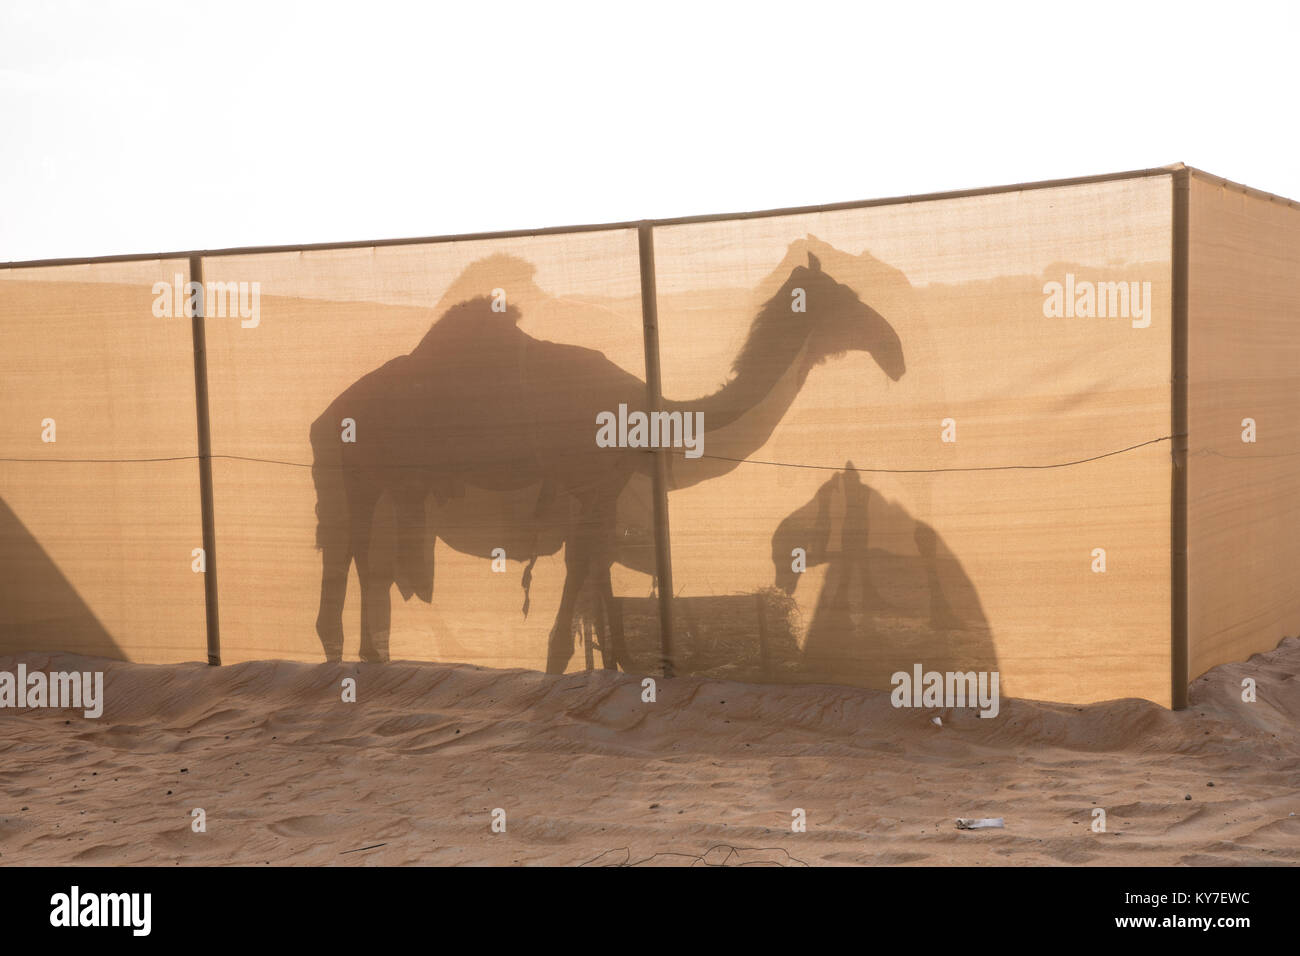 Silhouette di cammelli su una tela tenendo pen nel deserto. Abu Dhabi, negli Emirati Arabi Uniti. Foto Stock